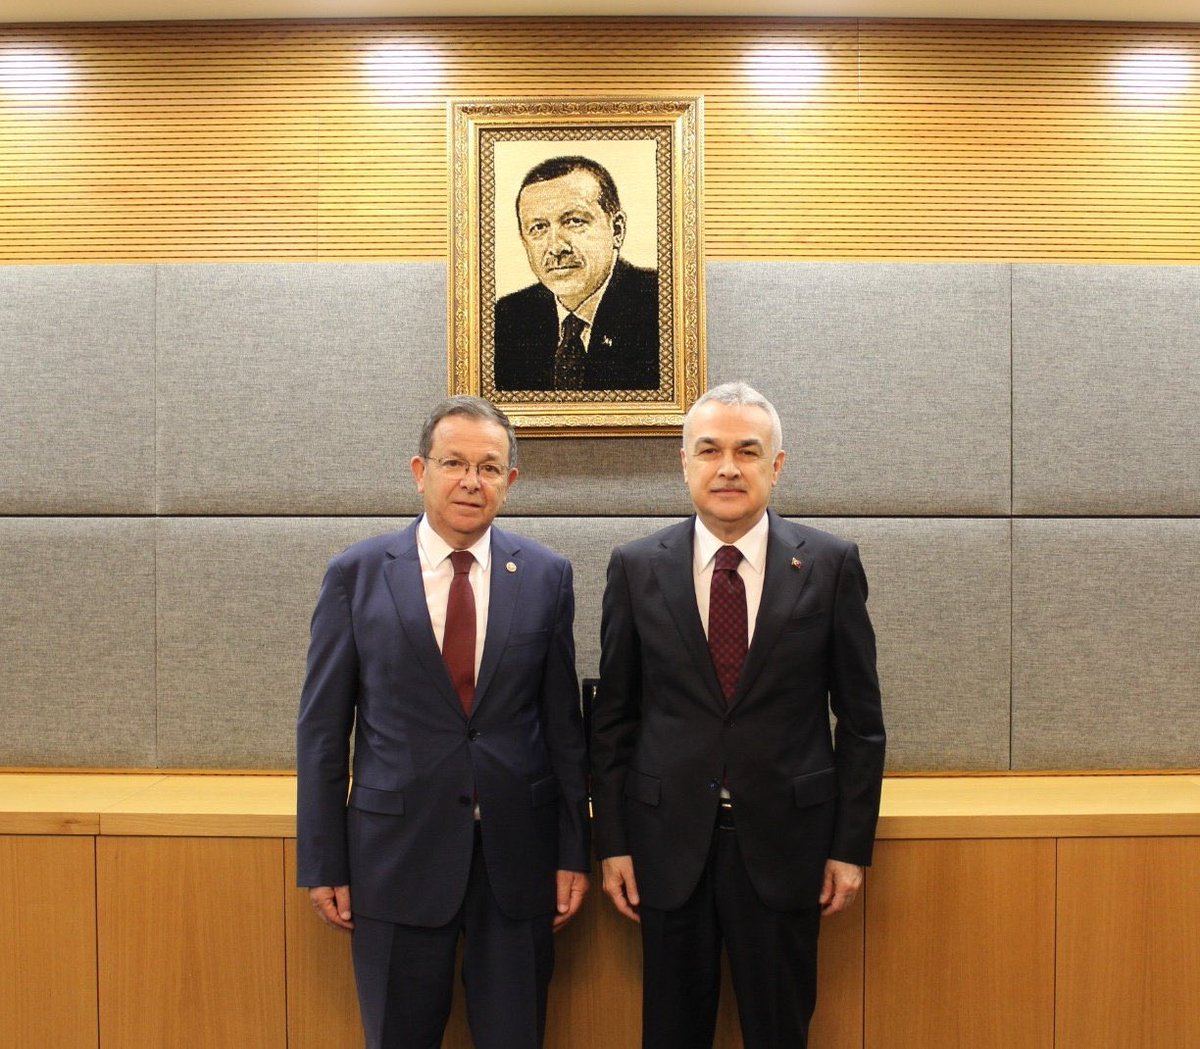 TBMM KİT Komisyonu Başkanımız, Aydın Milletvekilimiz Sn. Mustafa Savaş’ı makamında ziyaret ettim. Nazik misafirperverliği için teşekkür ediyorum. @aydinmsavas